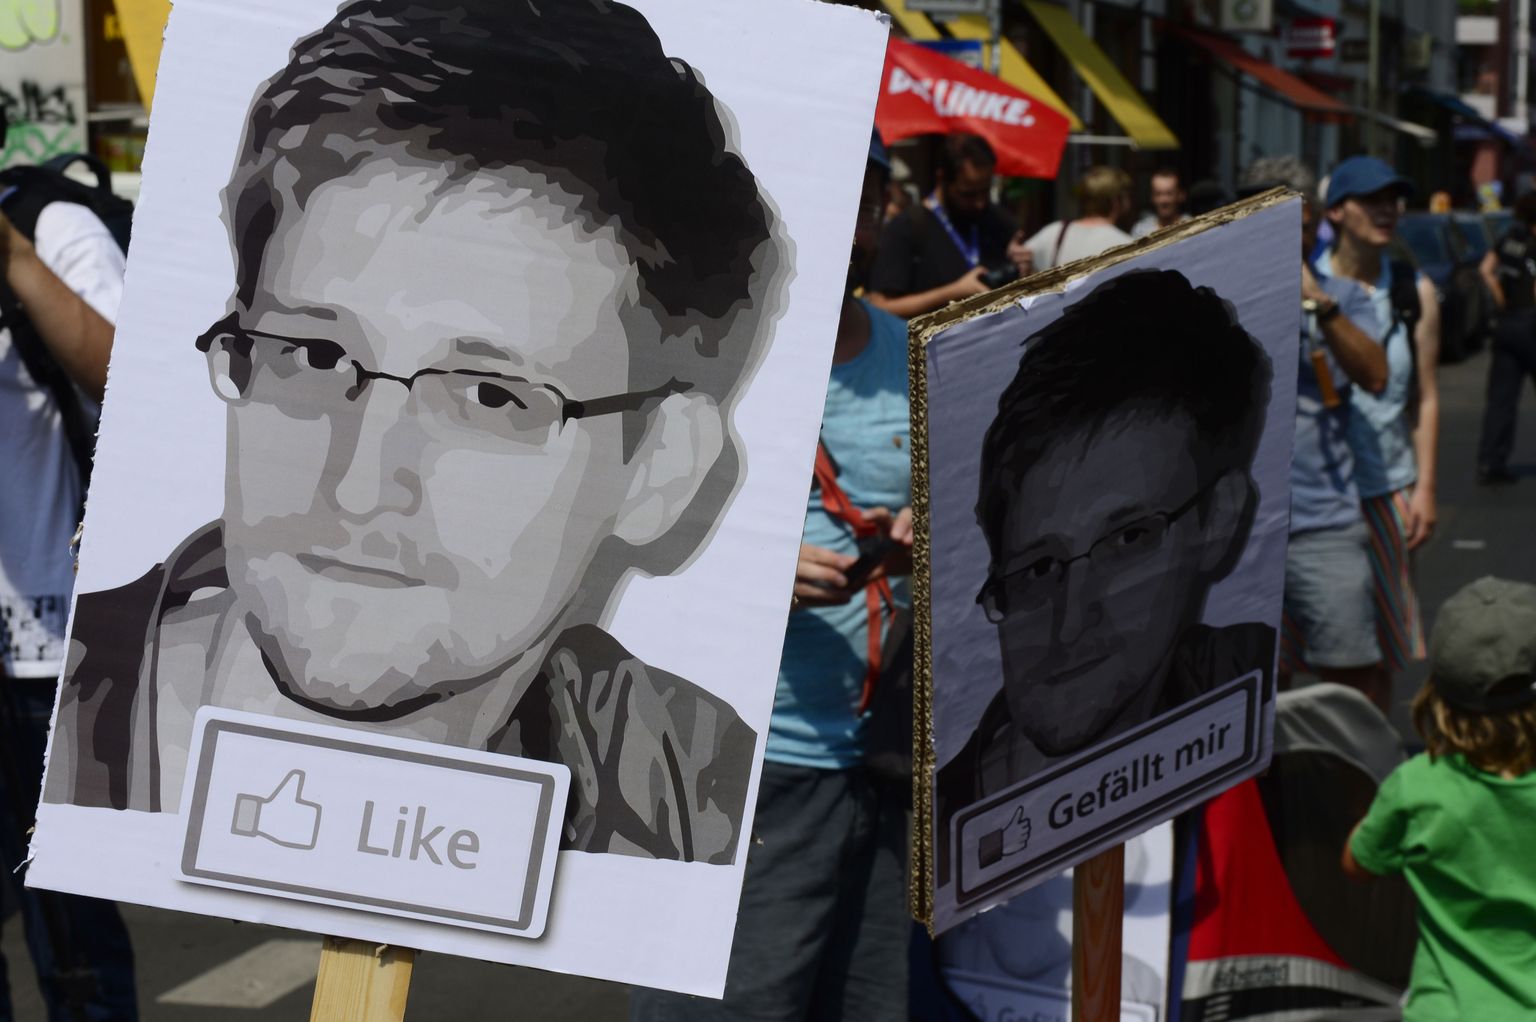 Бывший сотрудник ЦРУ и подрядчик Агентства национальной безопасности (АНБ) США Эдвард Сноуден начал собирать секретные документы об американских программах электронной слежки еще в апреле 2012 года.